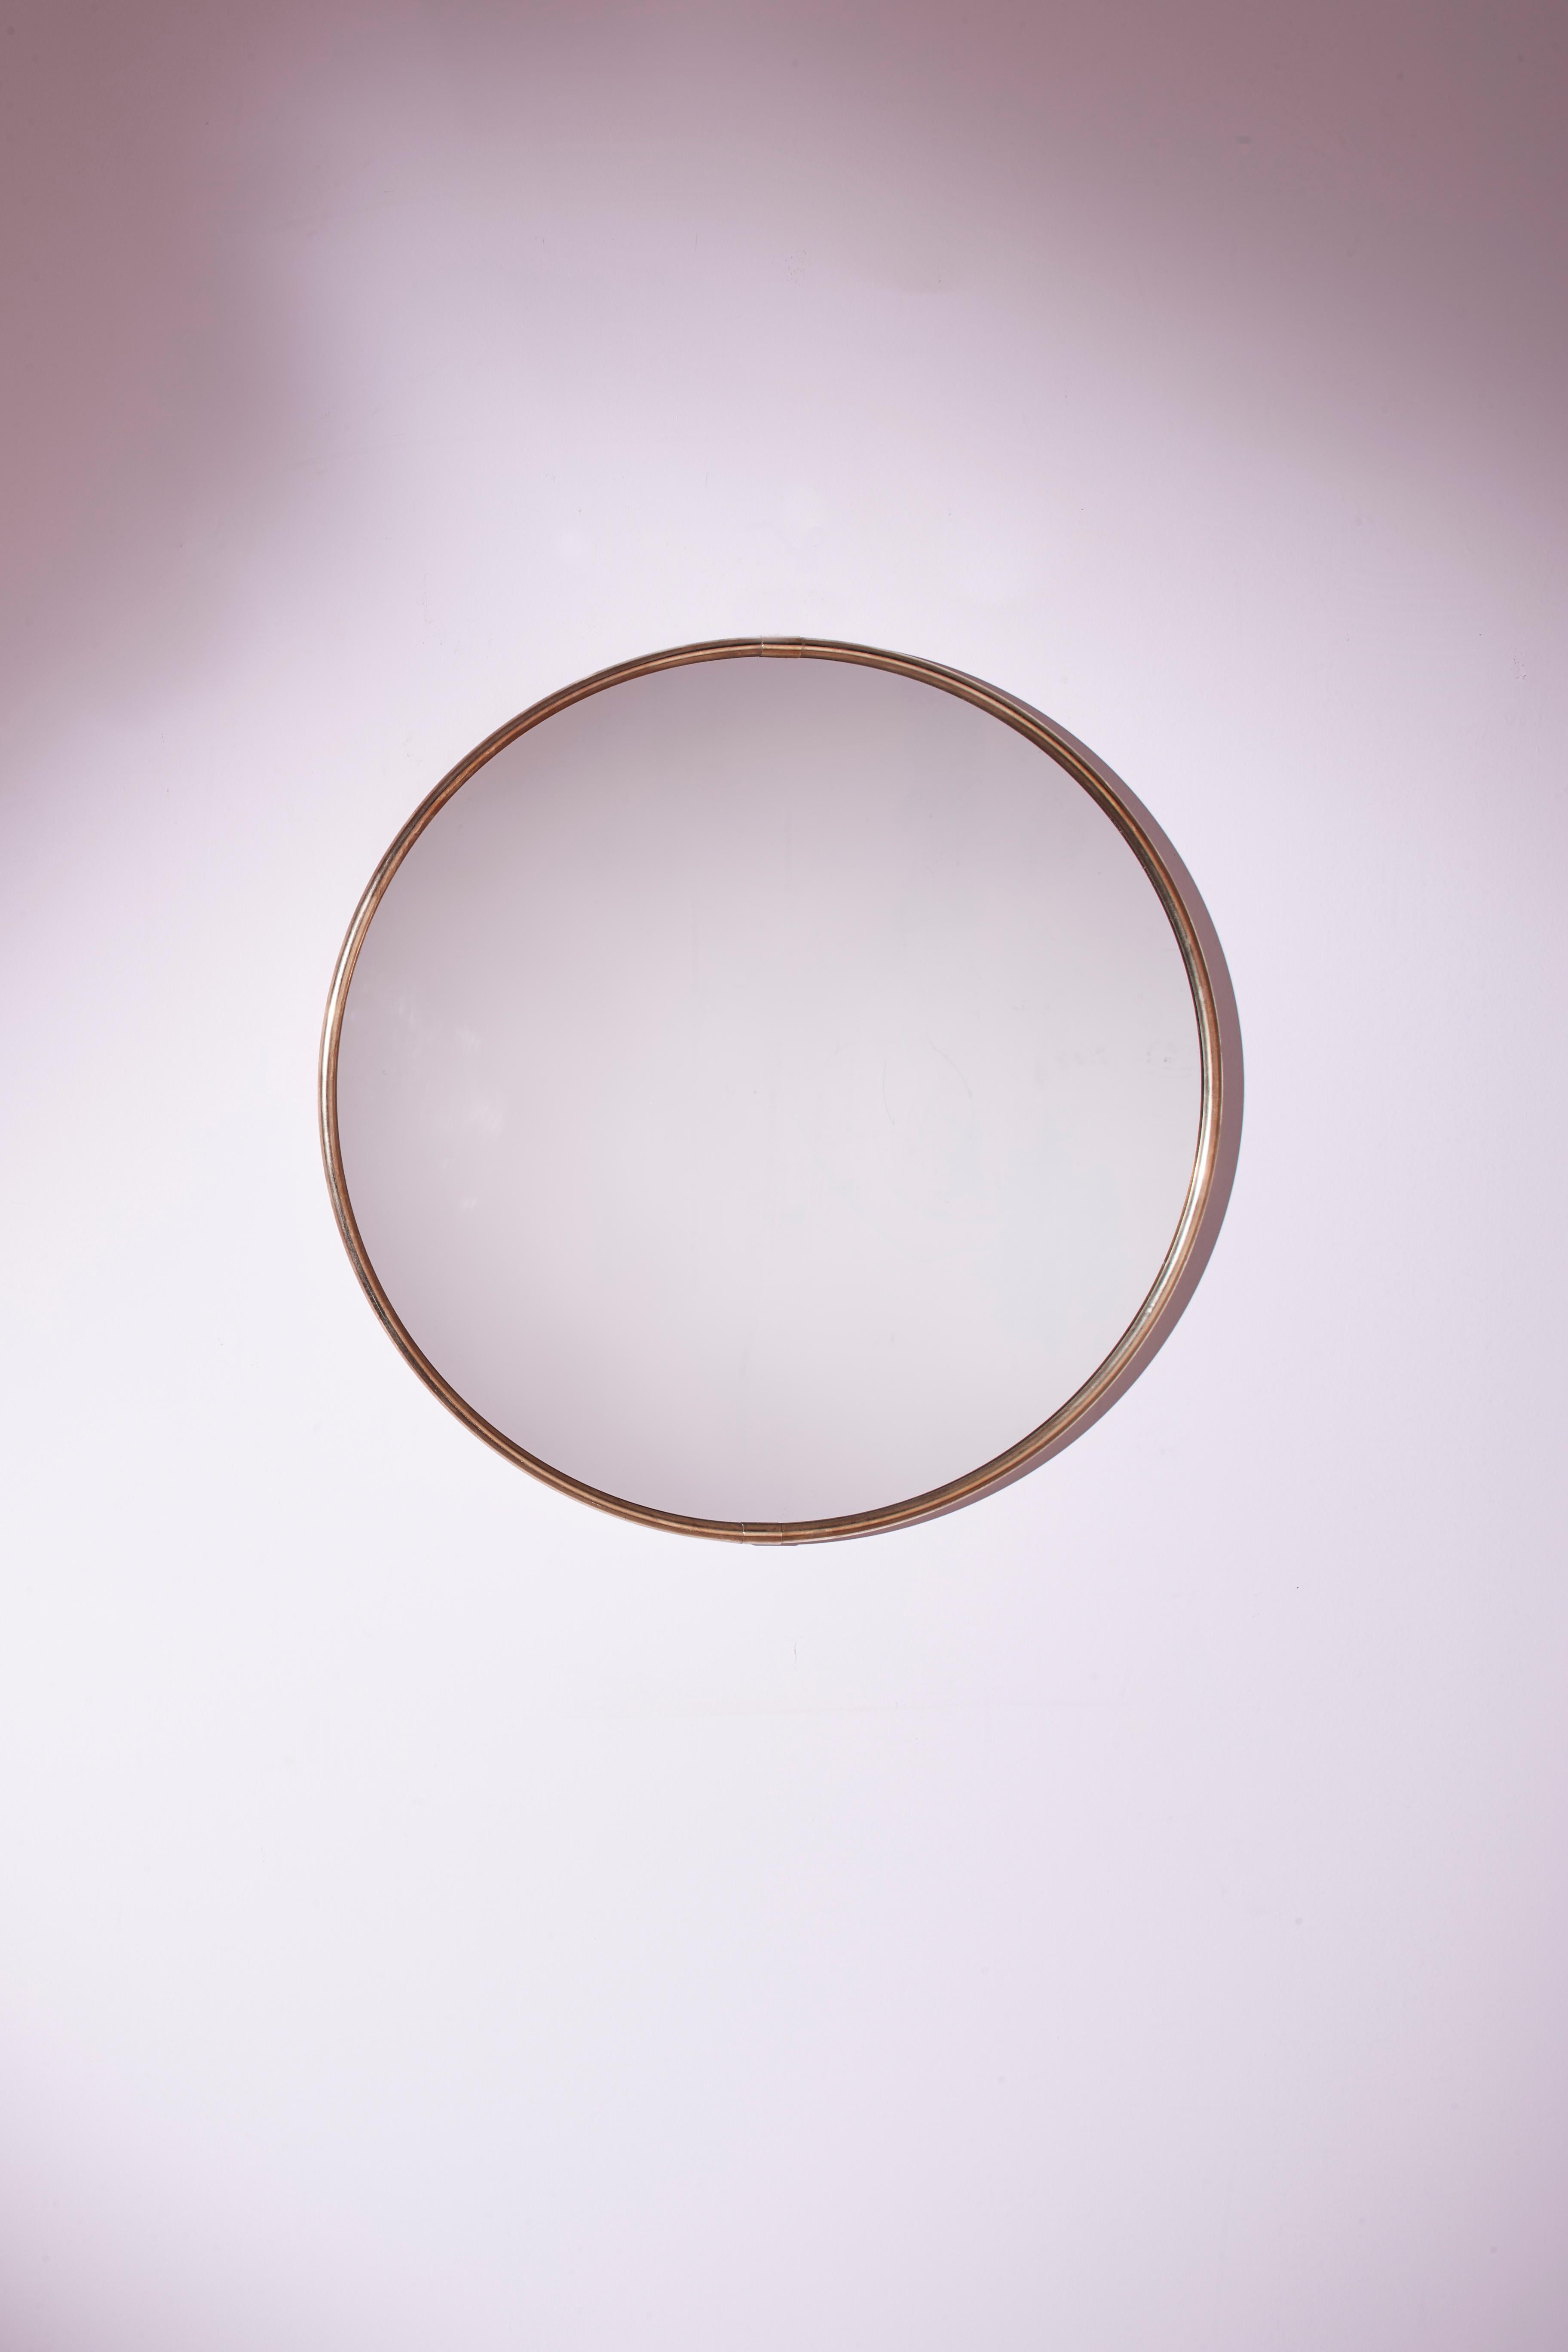 Charmant miroir circulaire de facture italienne datant des années 70, caractérisé par une plaque réfléchissante originale et un fin cadre en laiton.

Ce meuble raffiné est parfait pour mettre en valeur l'entrée, la chambre ou la salle de bains,